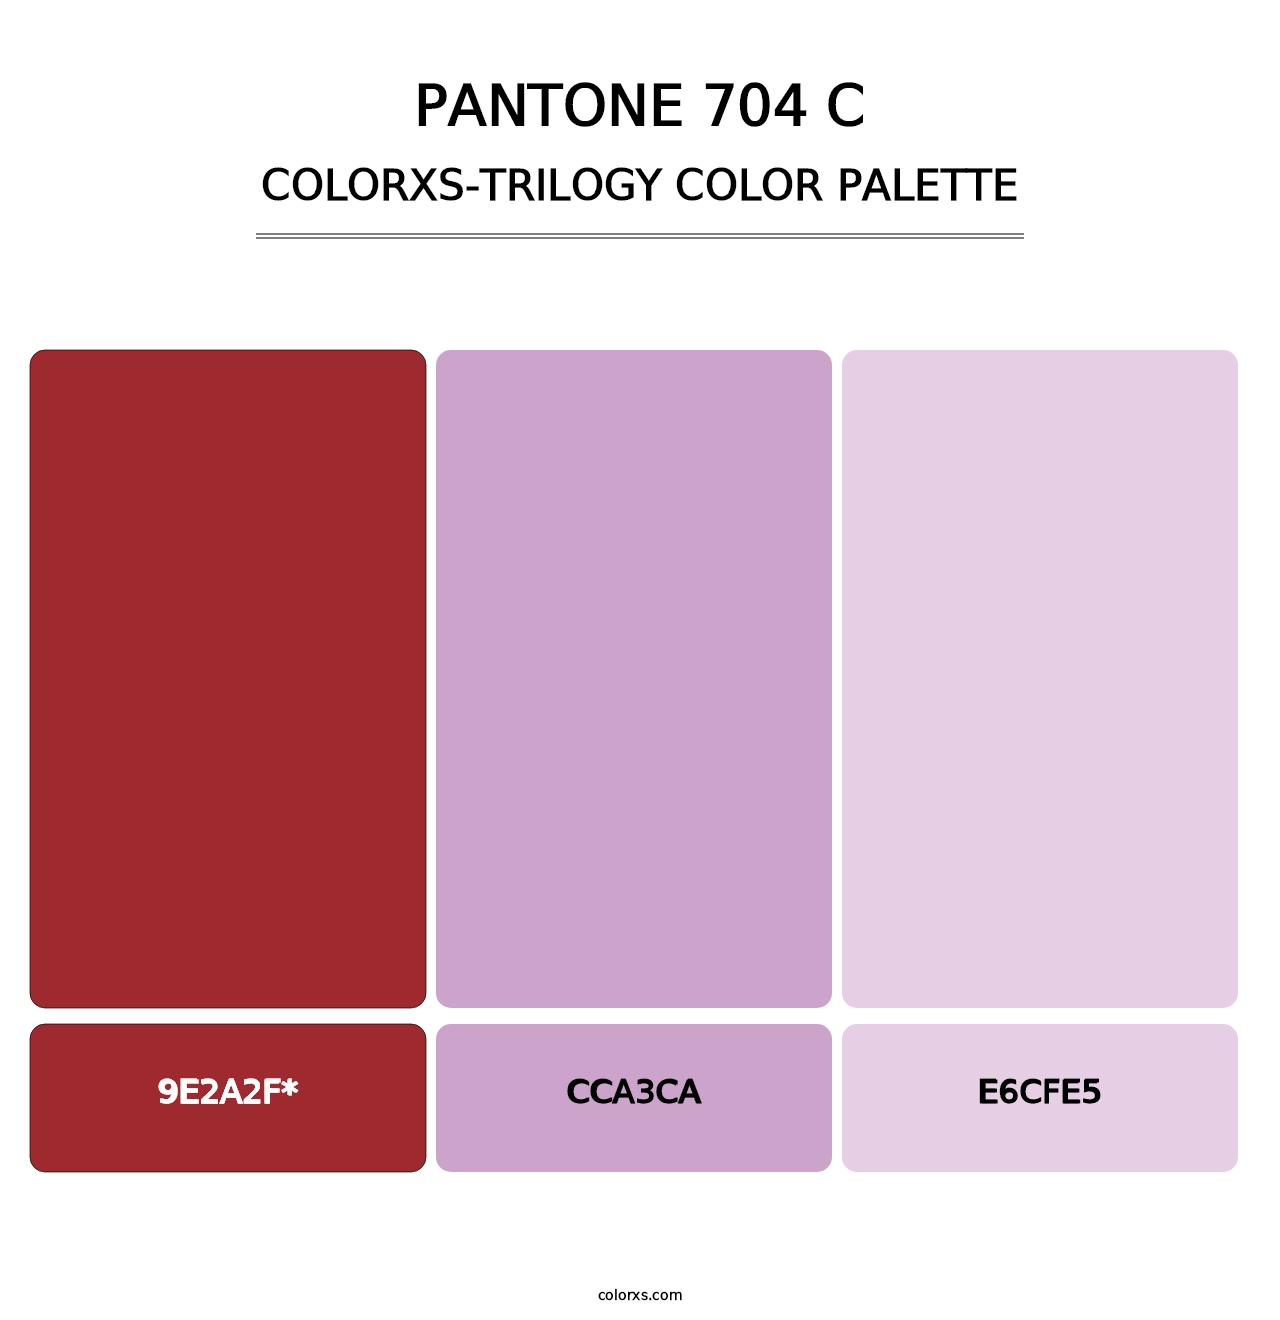 PANTONE 704 C - Colorxs Trilogy Palette